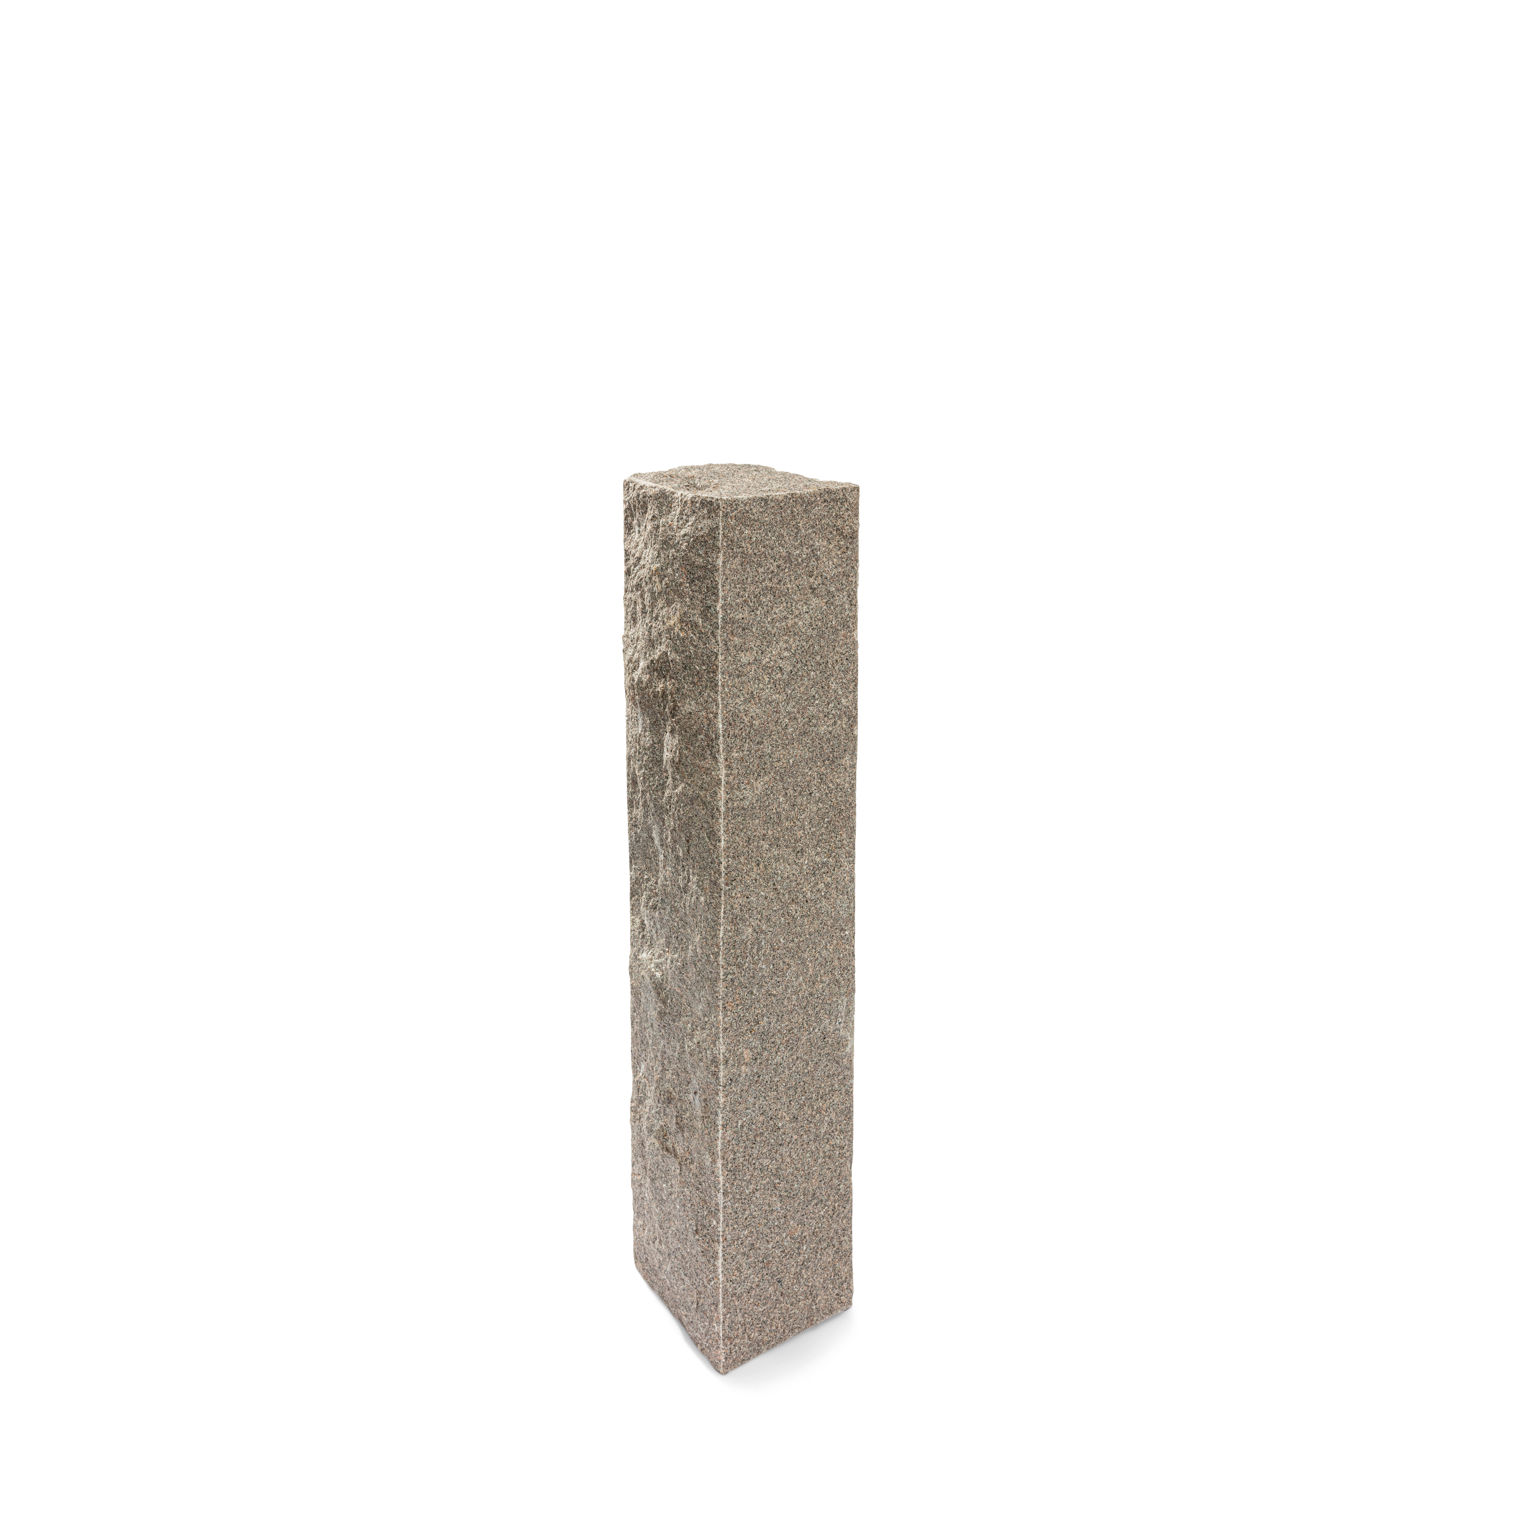 Produktbild på en stolpe i Bohus grå;granit. Stolpen har ett råkilat utförande och mäter 1300x300x300.